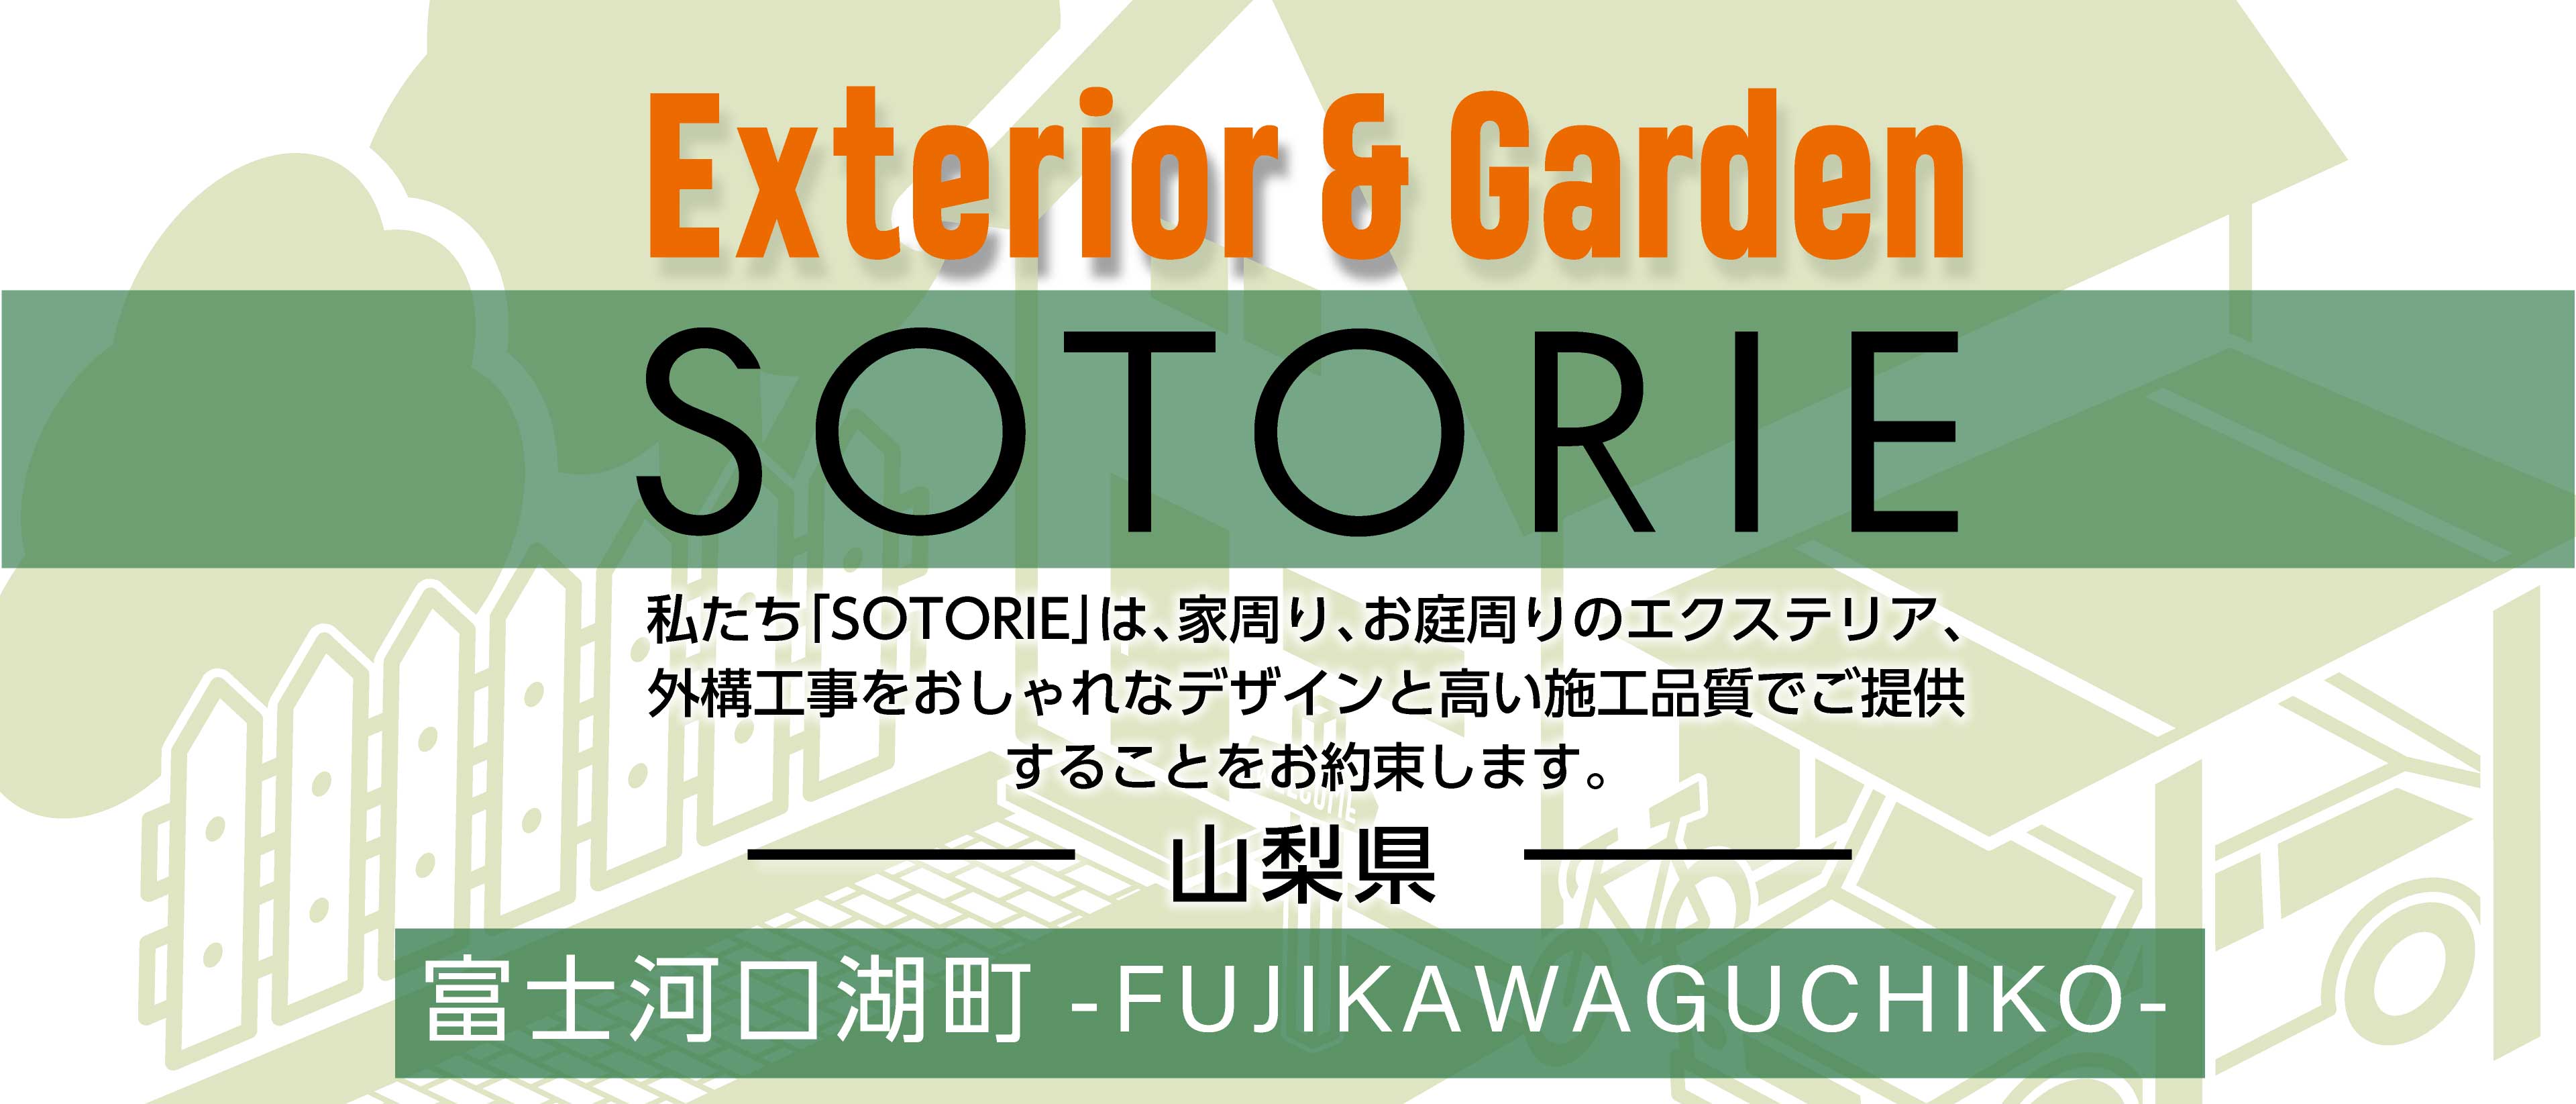 ソトリエ富士河口湖町では、家周りと庭周りの外構、エクステリア工事をおしゃれなデザインと高い施工品質でご提供することをお約束します。